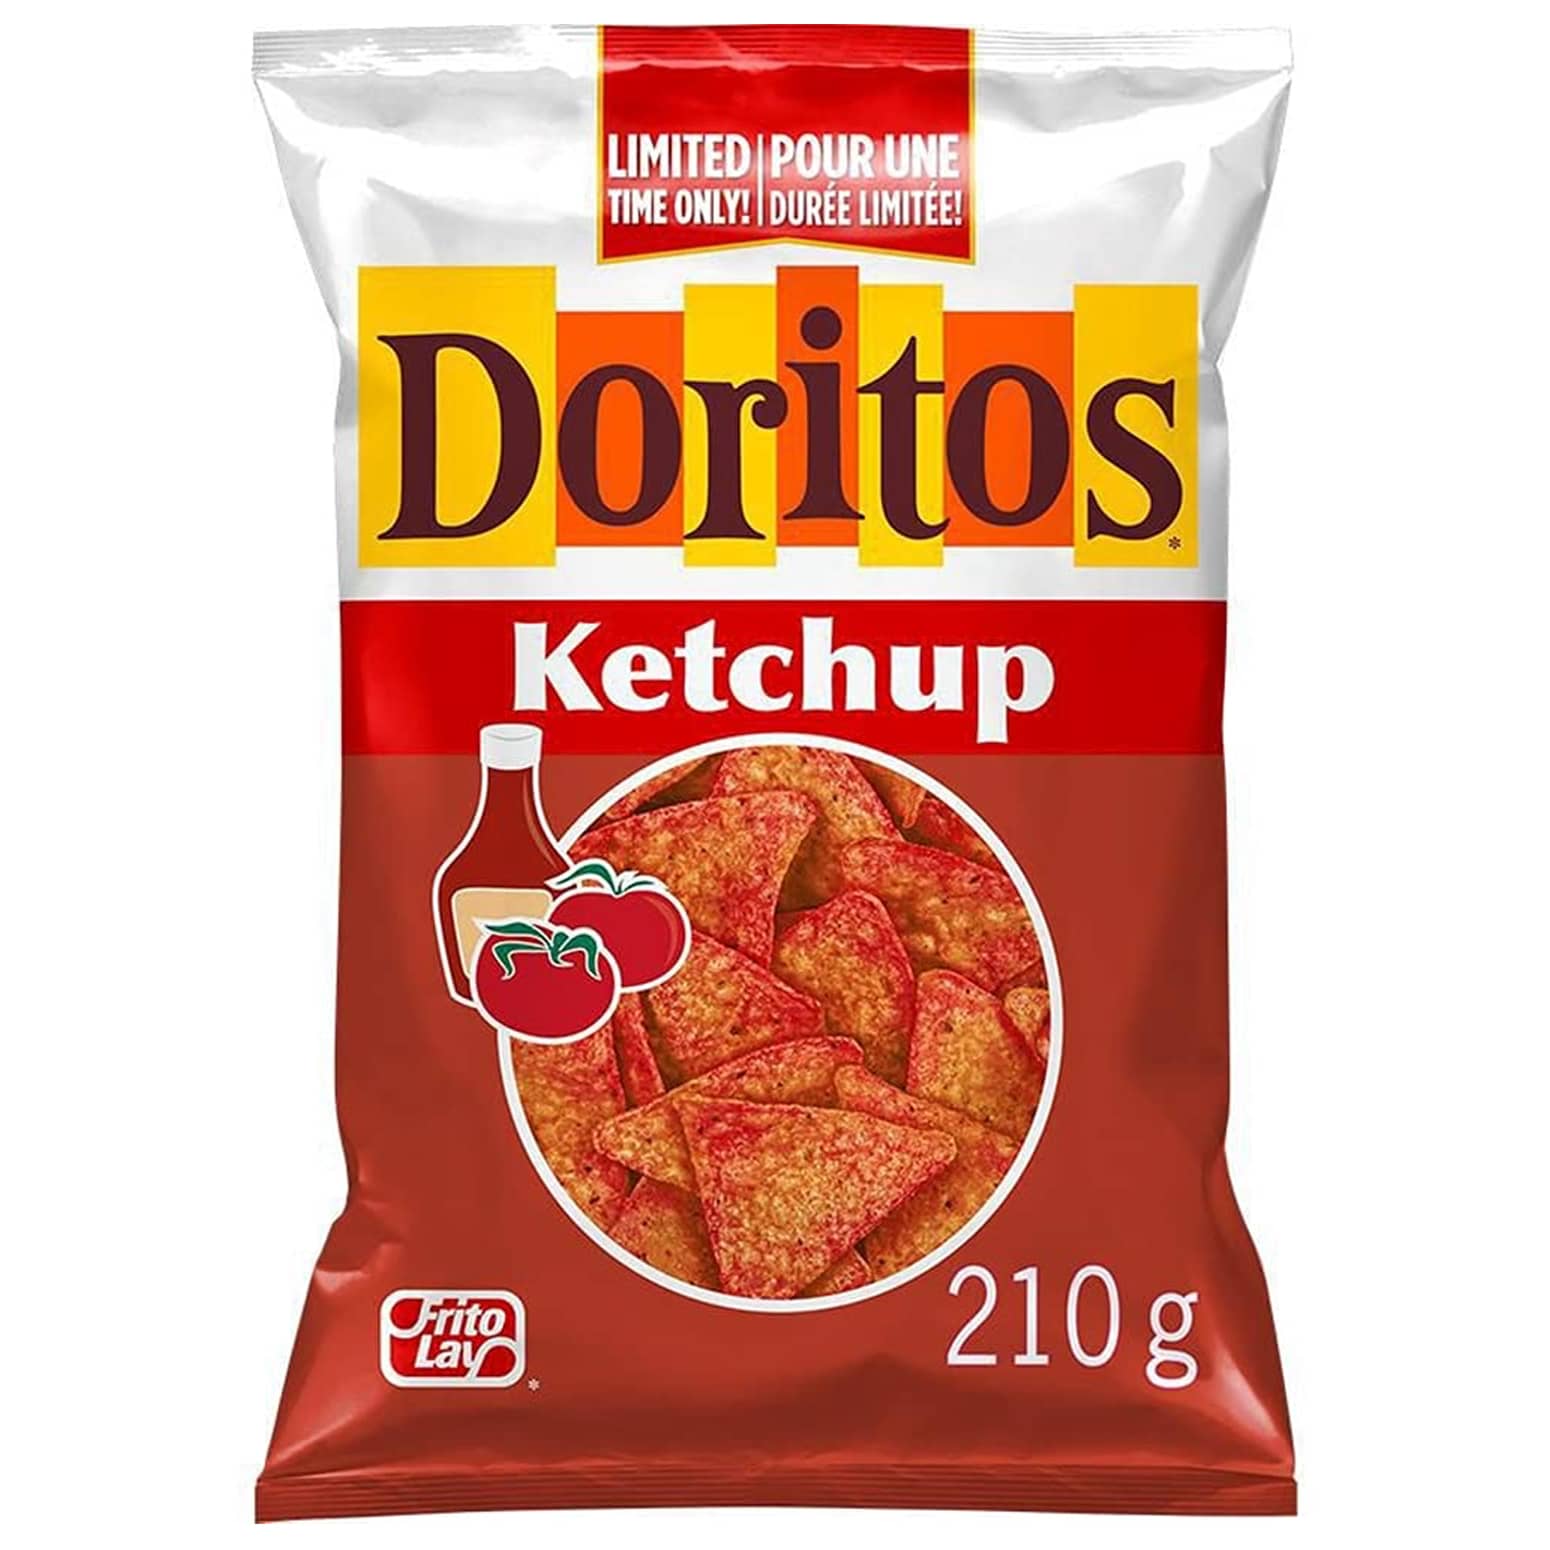 Doritos Ketchup Flavored Tortilla Chips From Canada